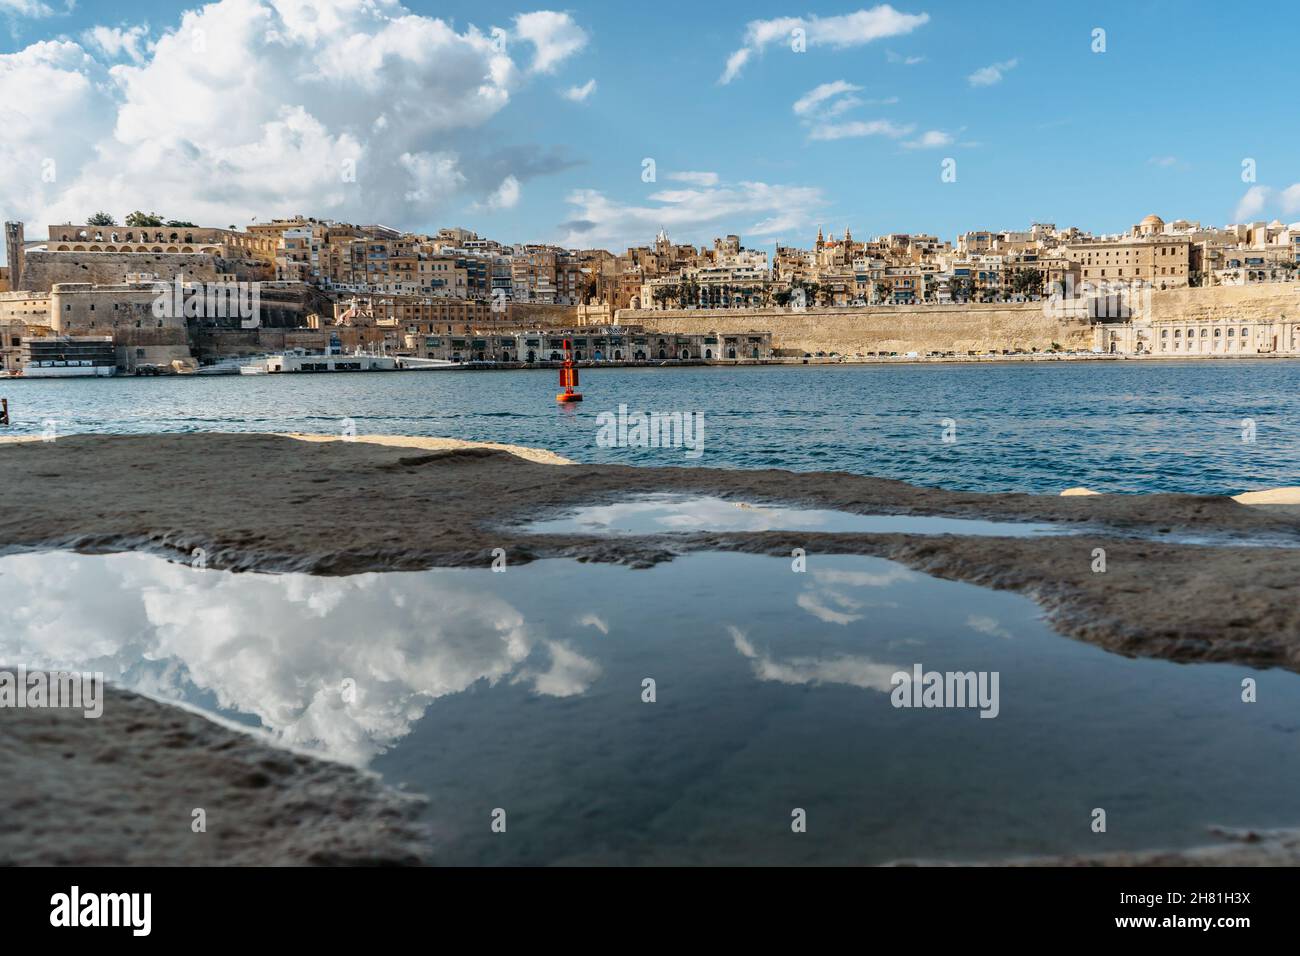 Vista panoramica della Valletta, Malta. Skyline della città dal porto di Birgu Vittoriosa. Paesaggio urbano tranquillo, giorno d'estate soleggiato, nuvole riflesse nell'acqua. Waterfront Foto Stock